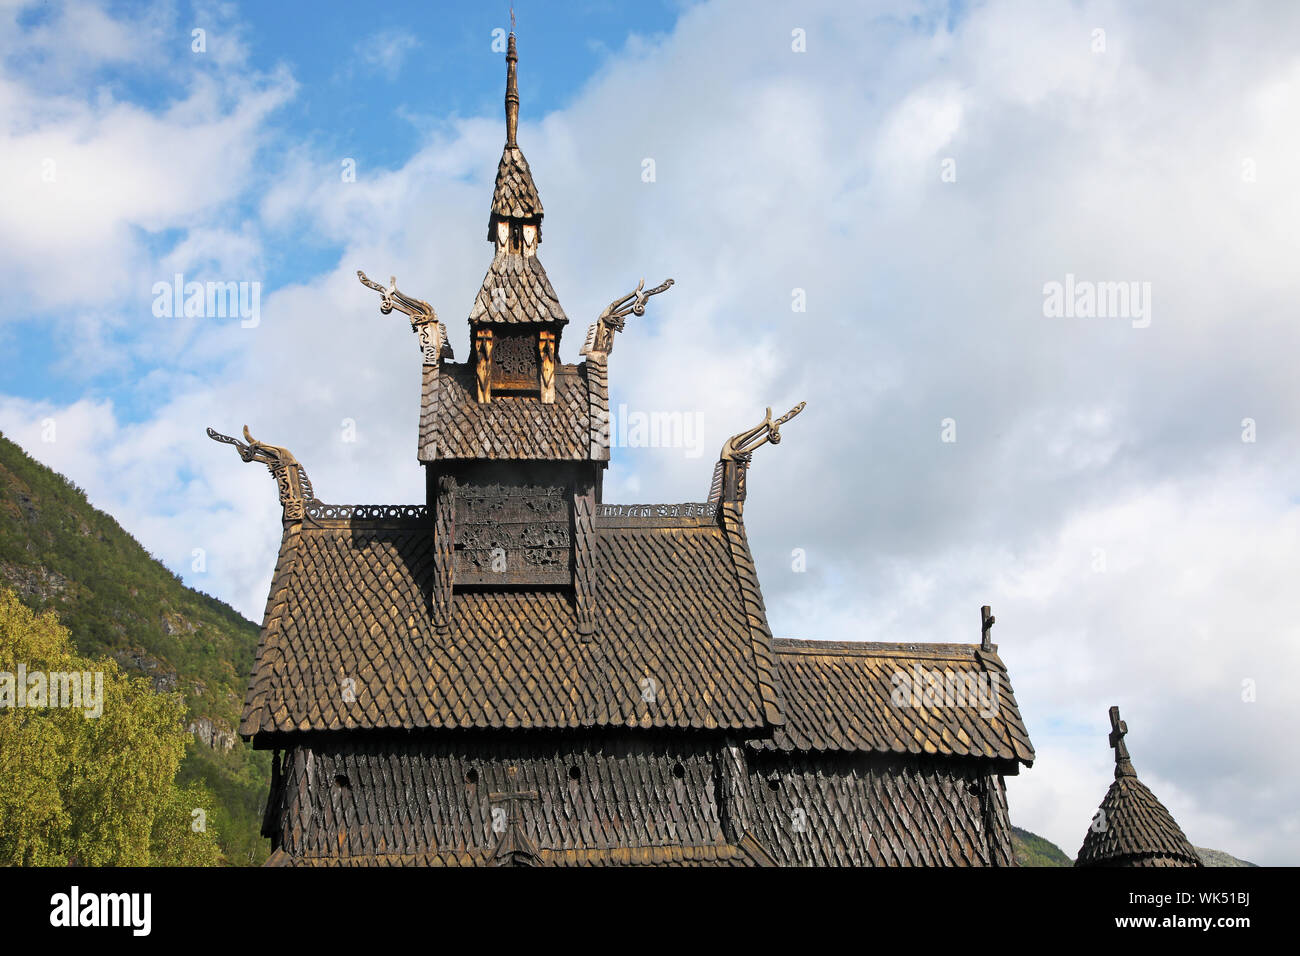 Toit de Borgund stavkirke de Norvège. Le toit d'une ancienne église en bois près de 900 ans. Banque D'Images